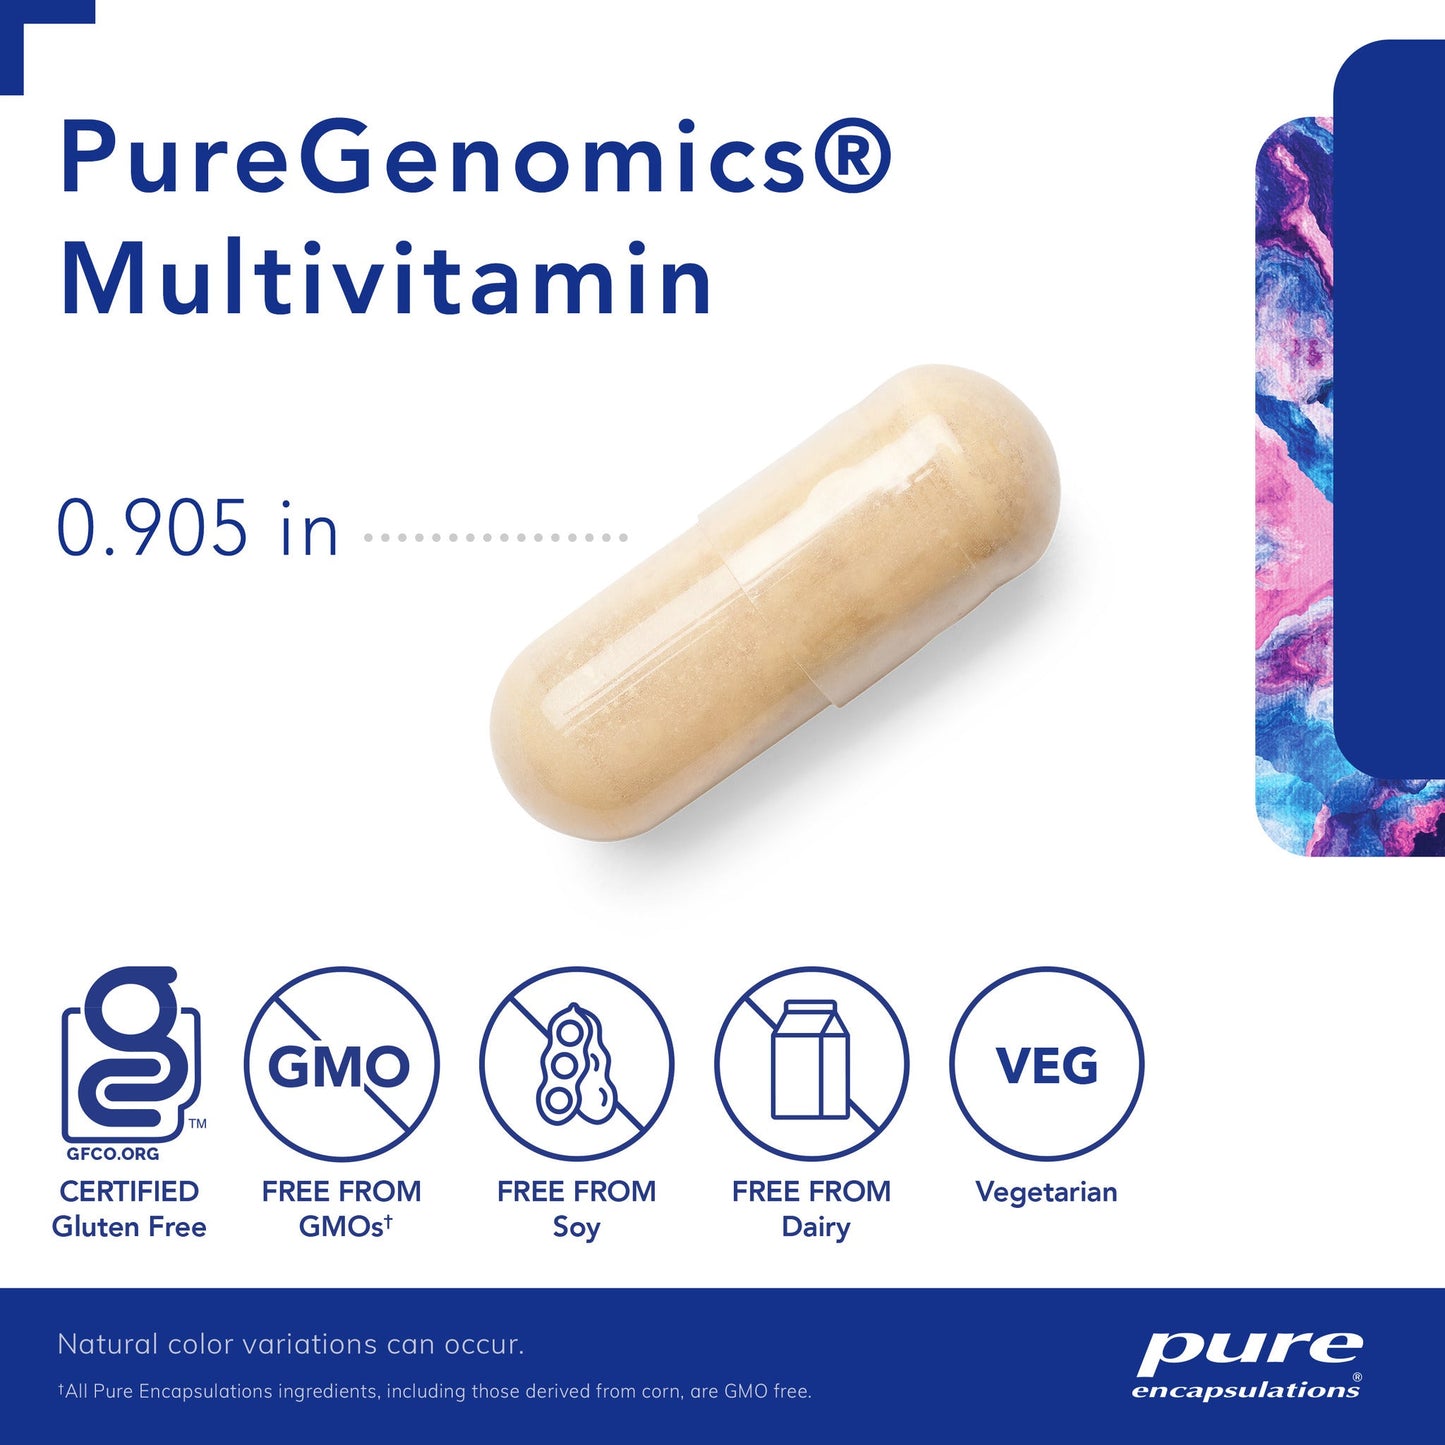 PureGenomics Multivitamin